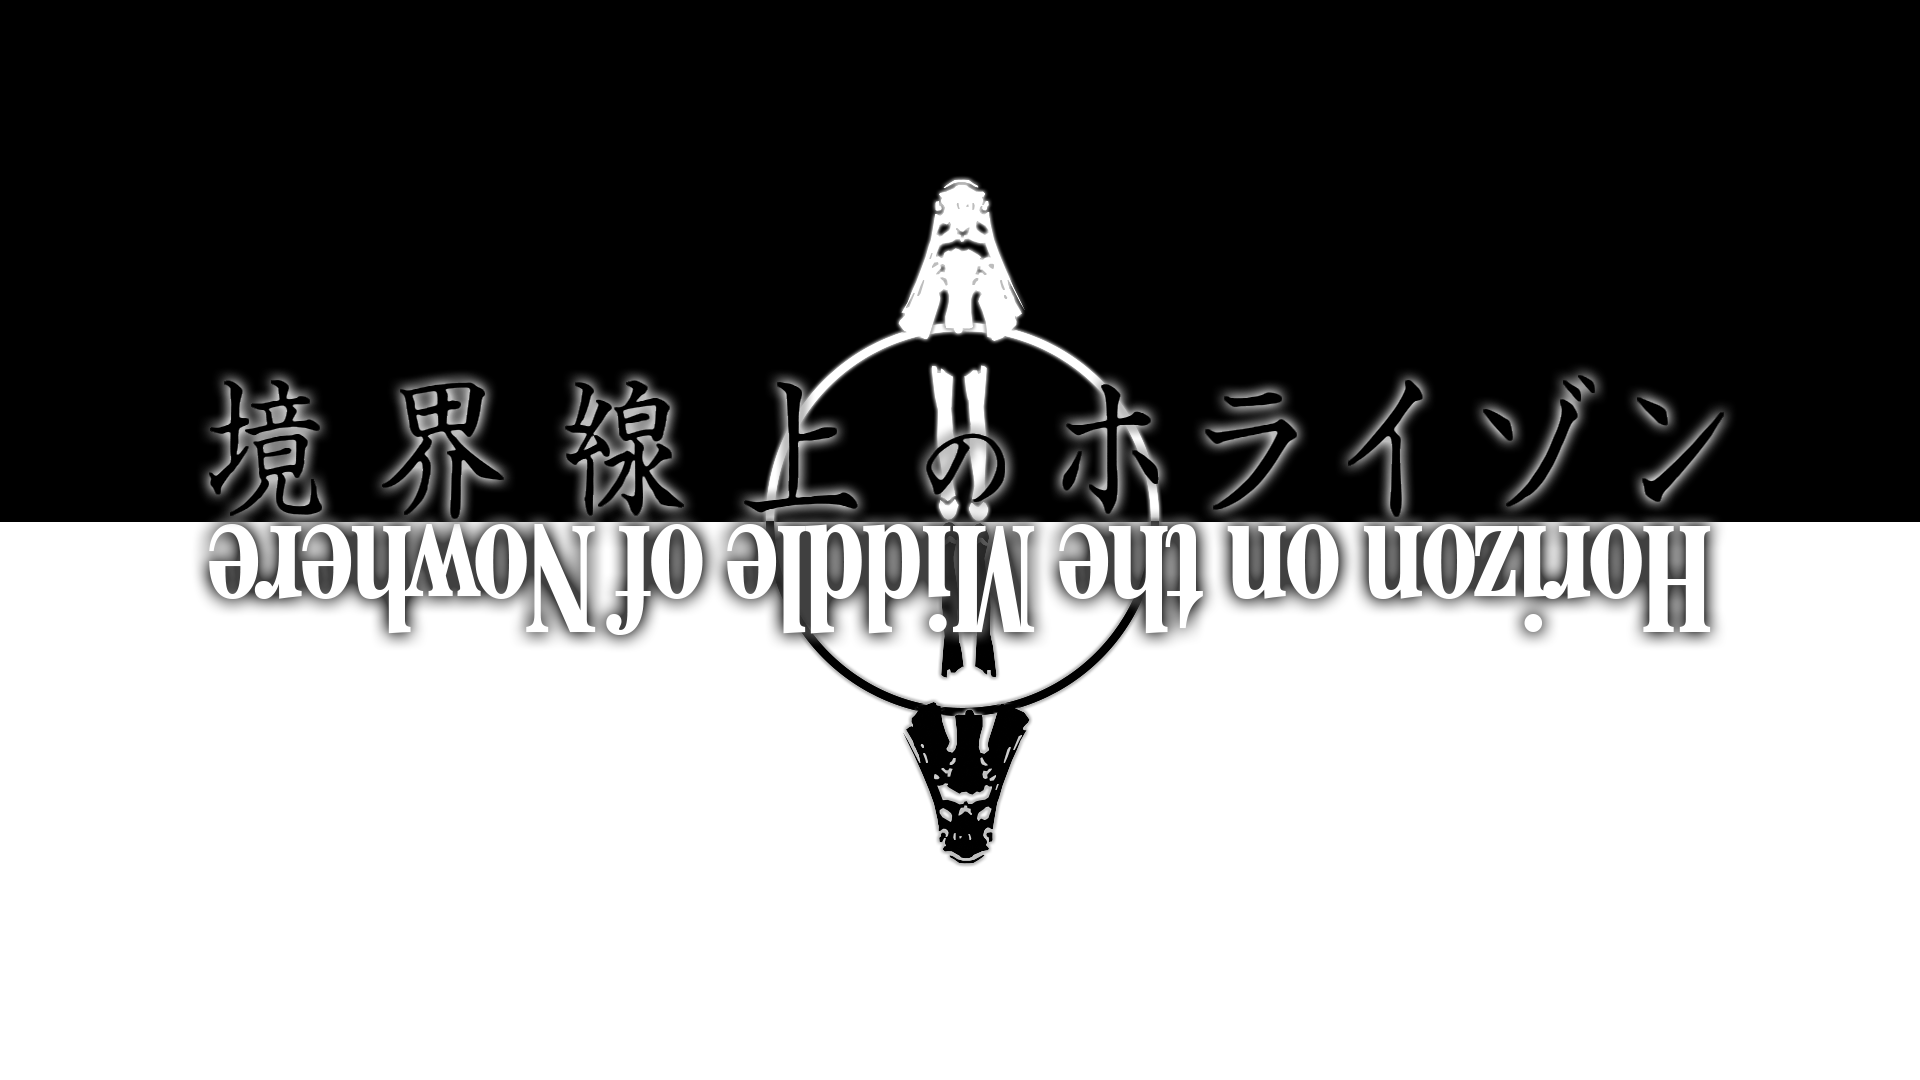 Kyoukai Senjou No Horizon Horizon Ariadust Anime Typography 1920x1080